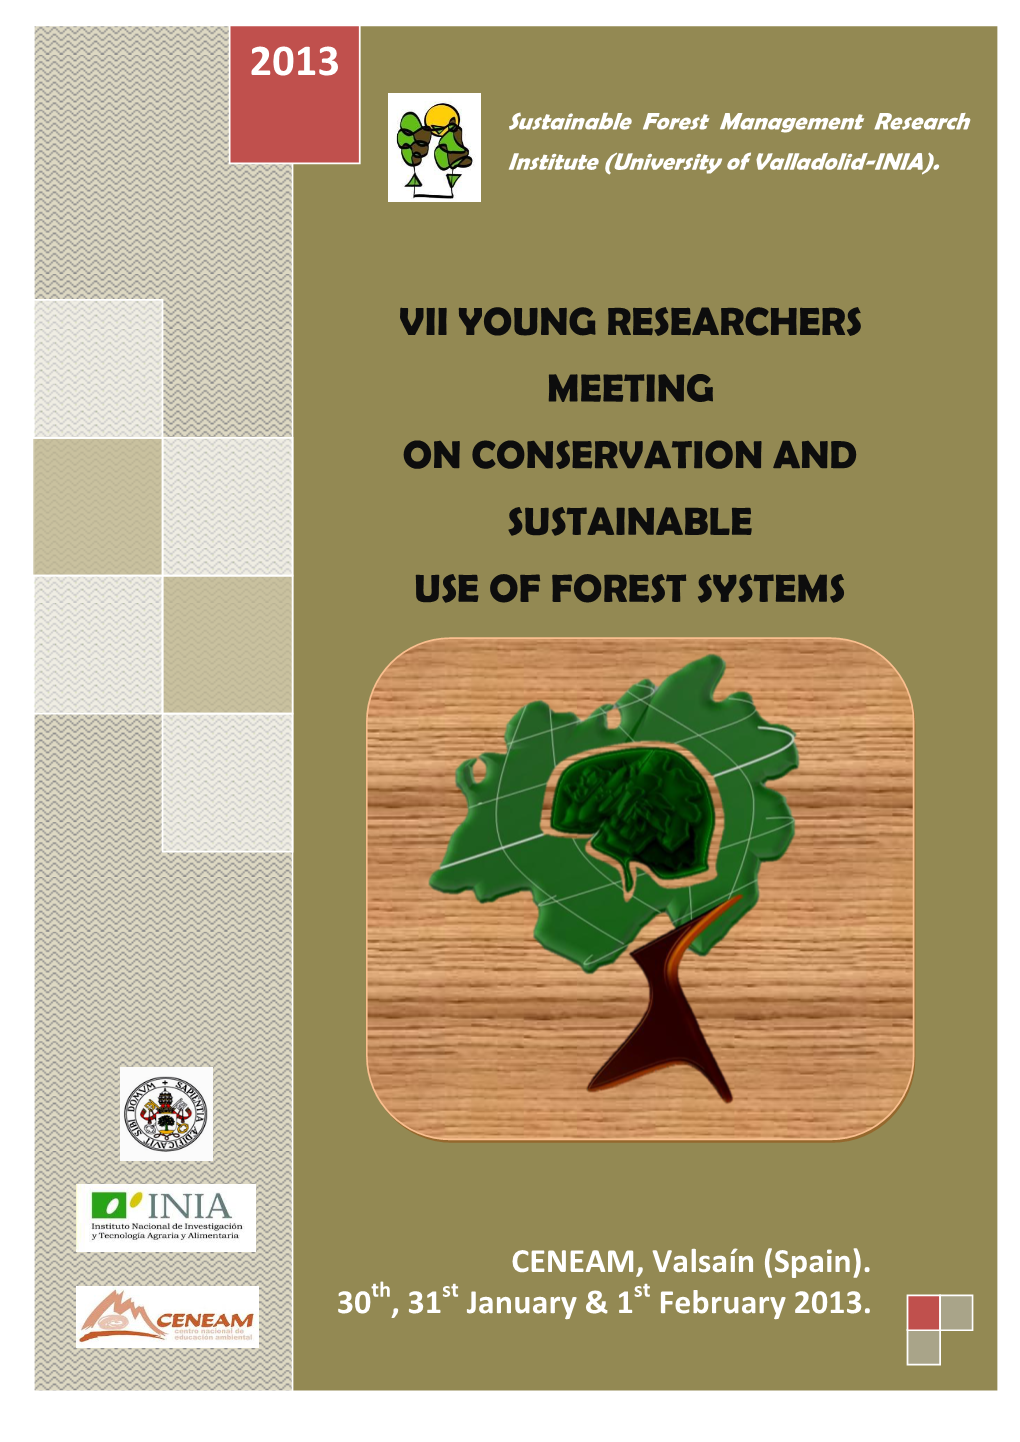 Vi Jornada De Jóvenes Investigadores En Conservación Y Uso Sostenible De Sistemas Forestales